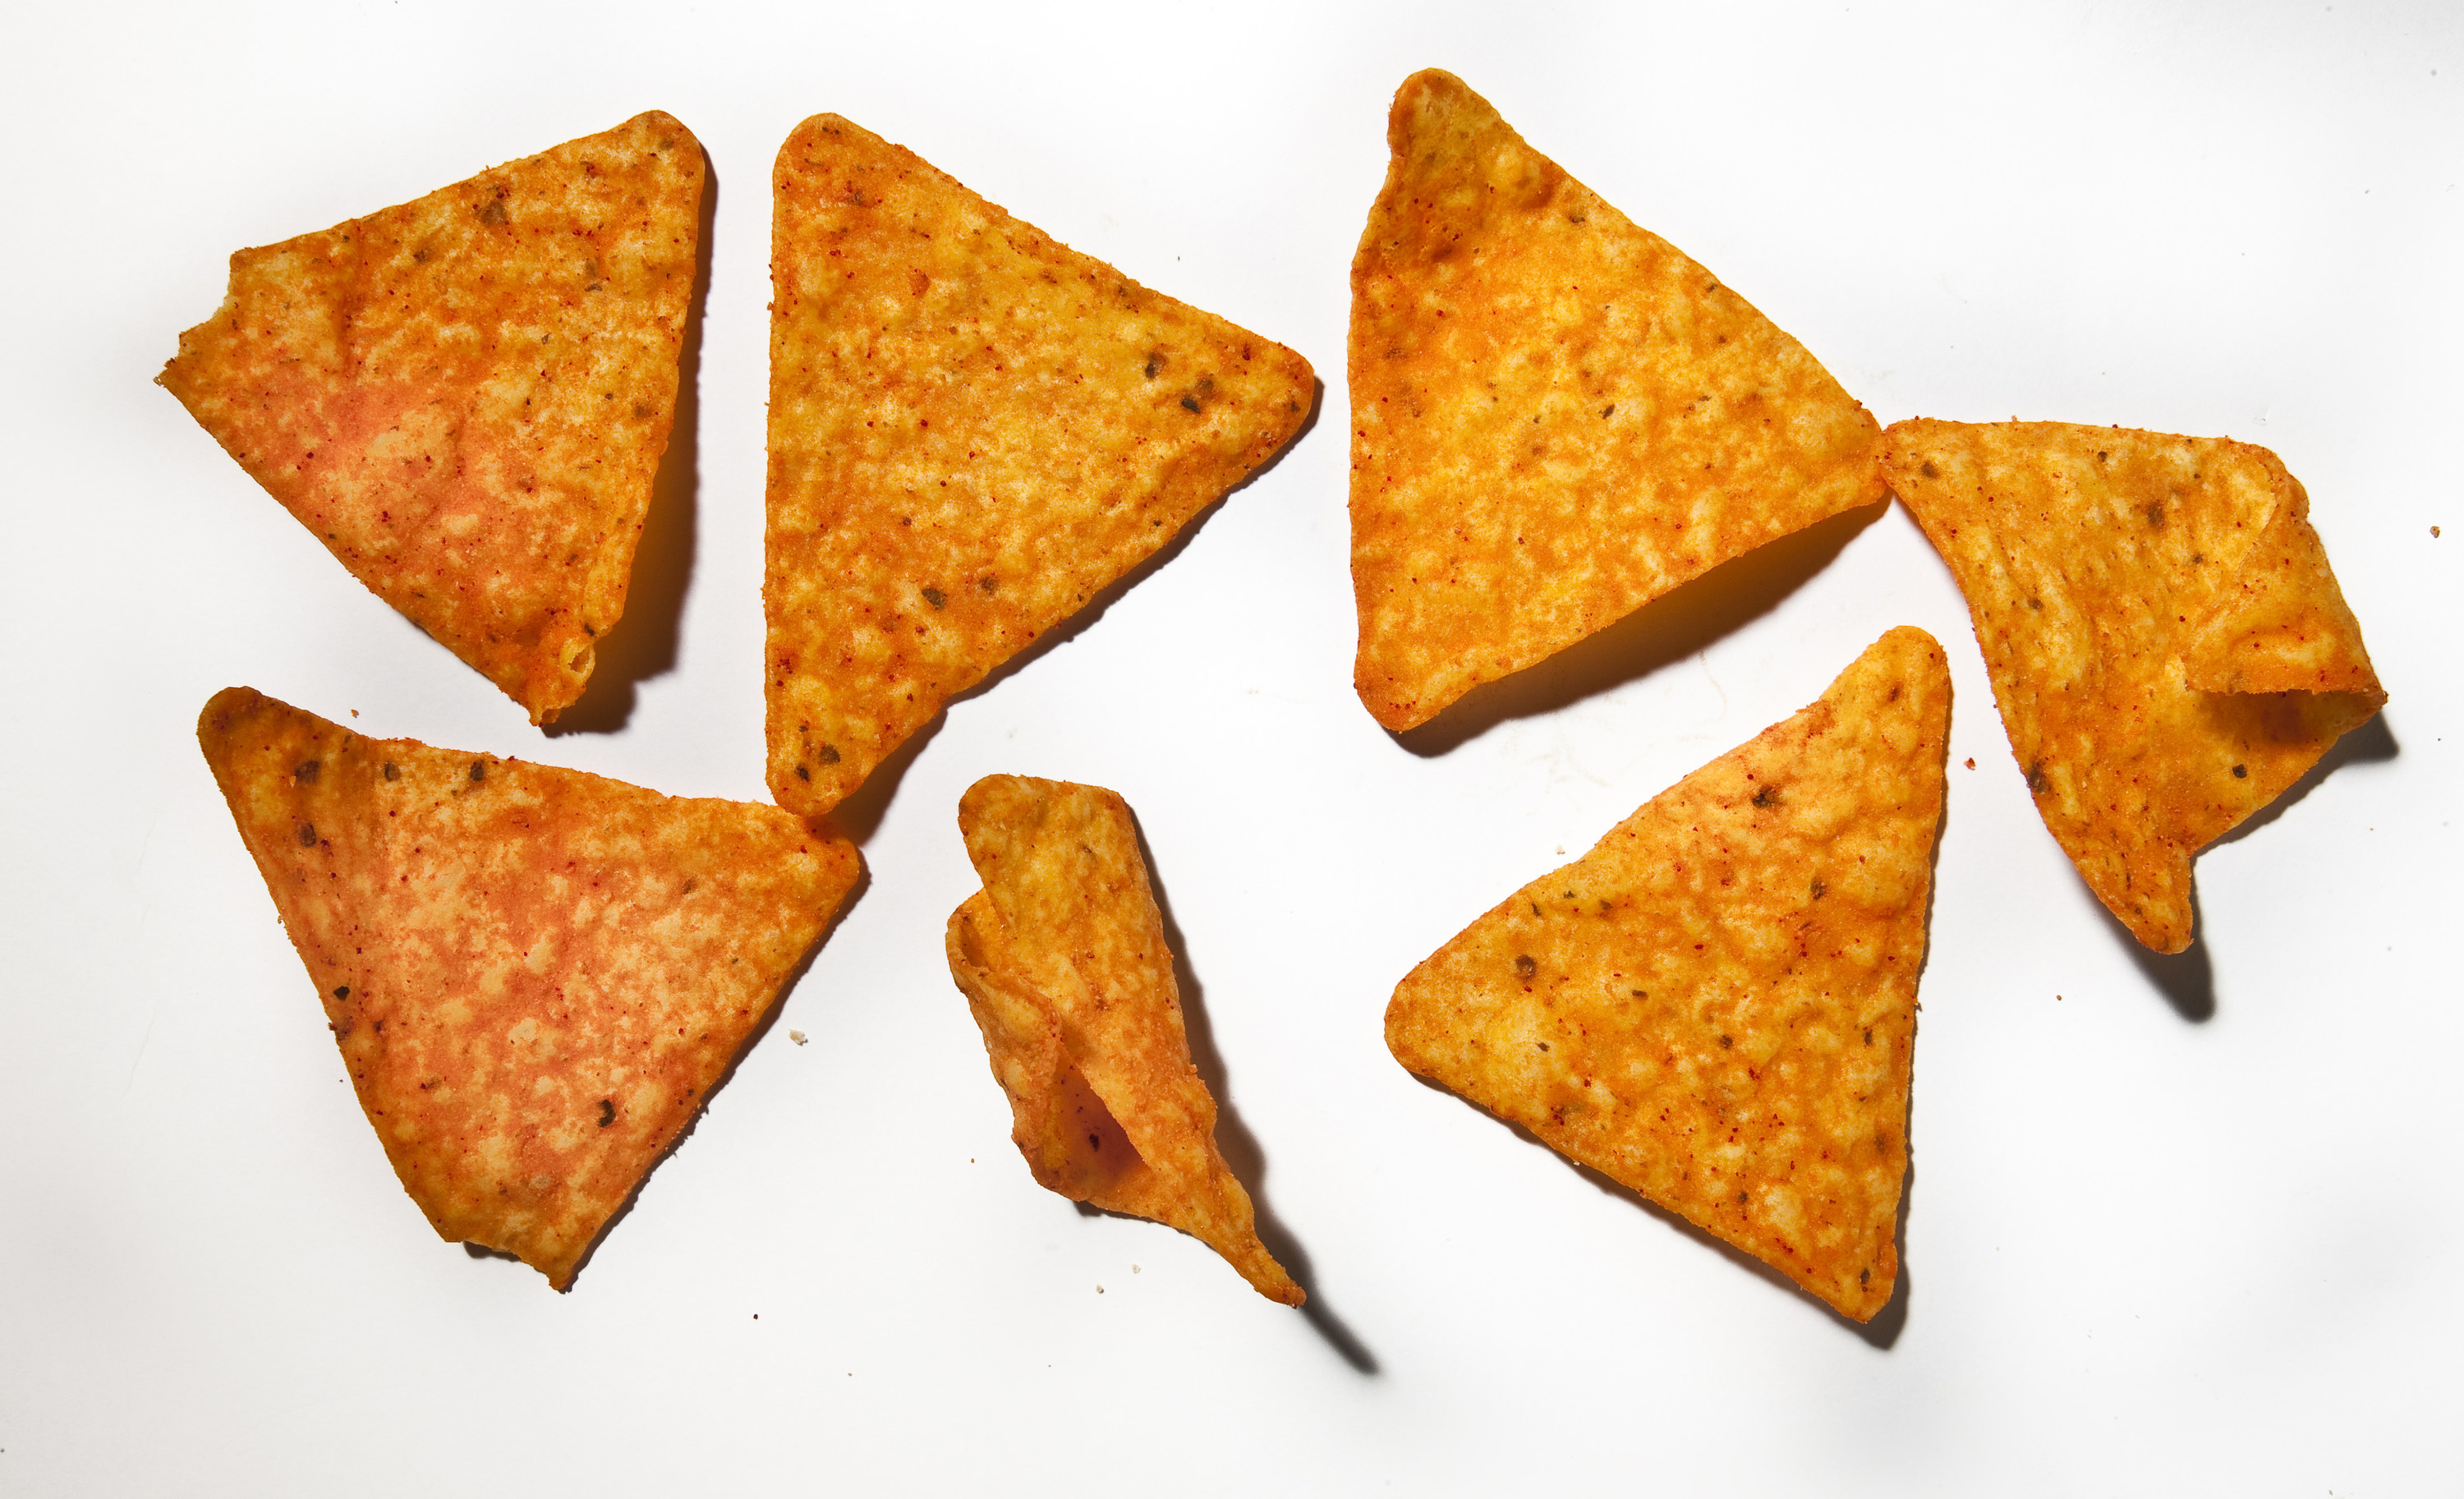 An image of Doritos 